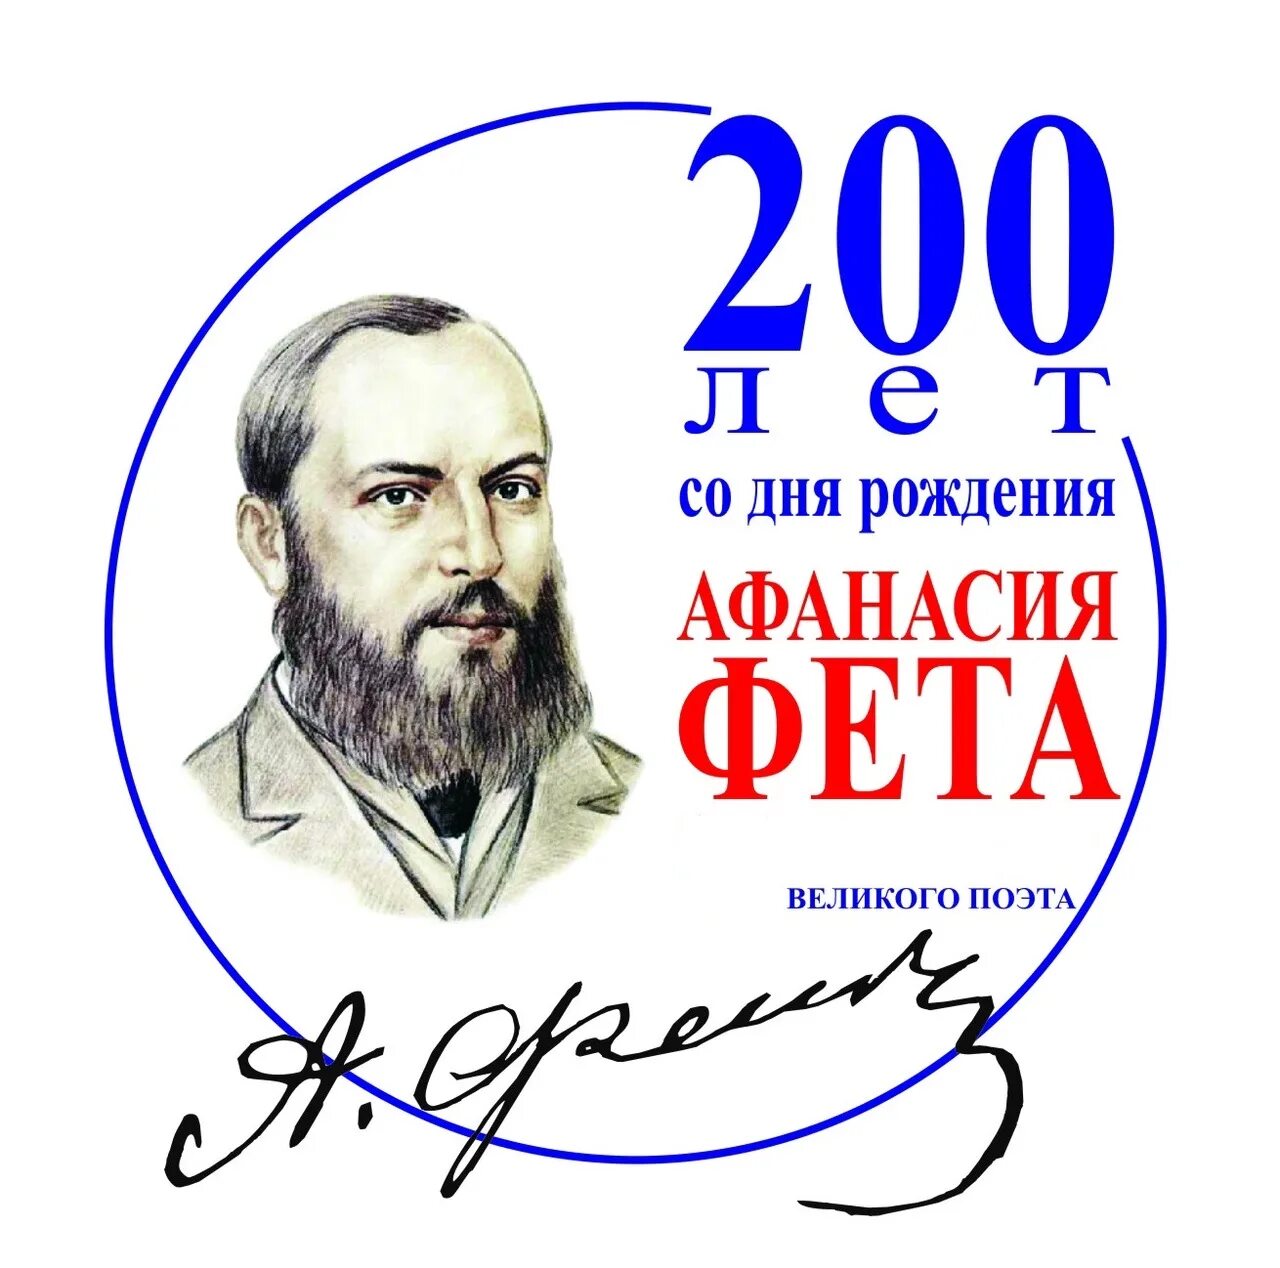 Афанасьевич Фет 200 лет.